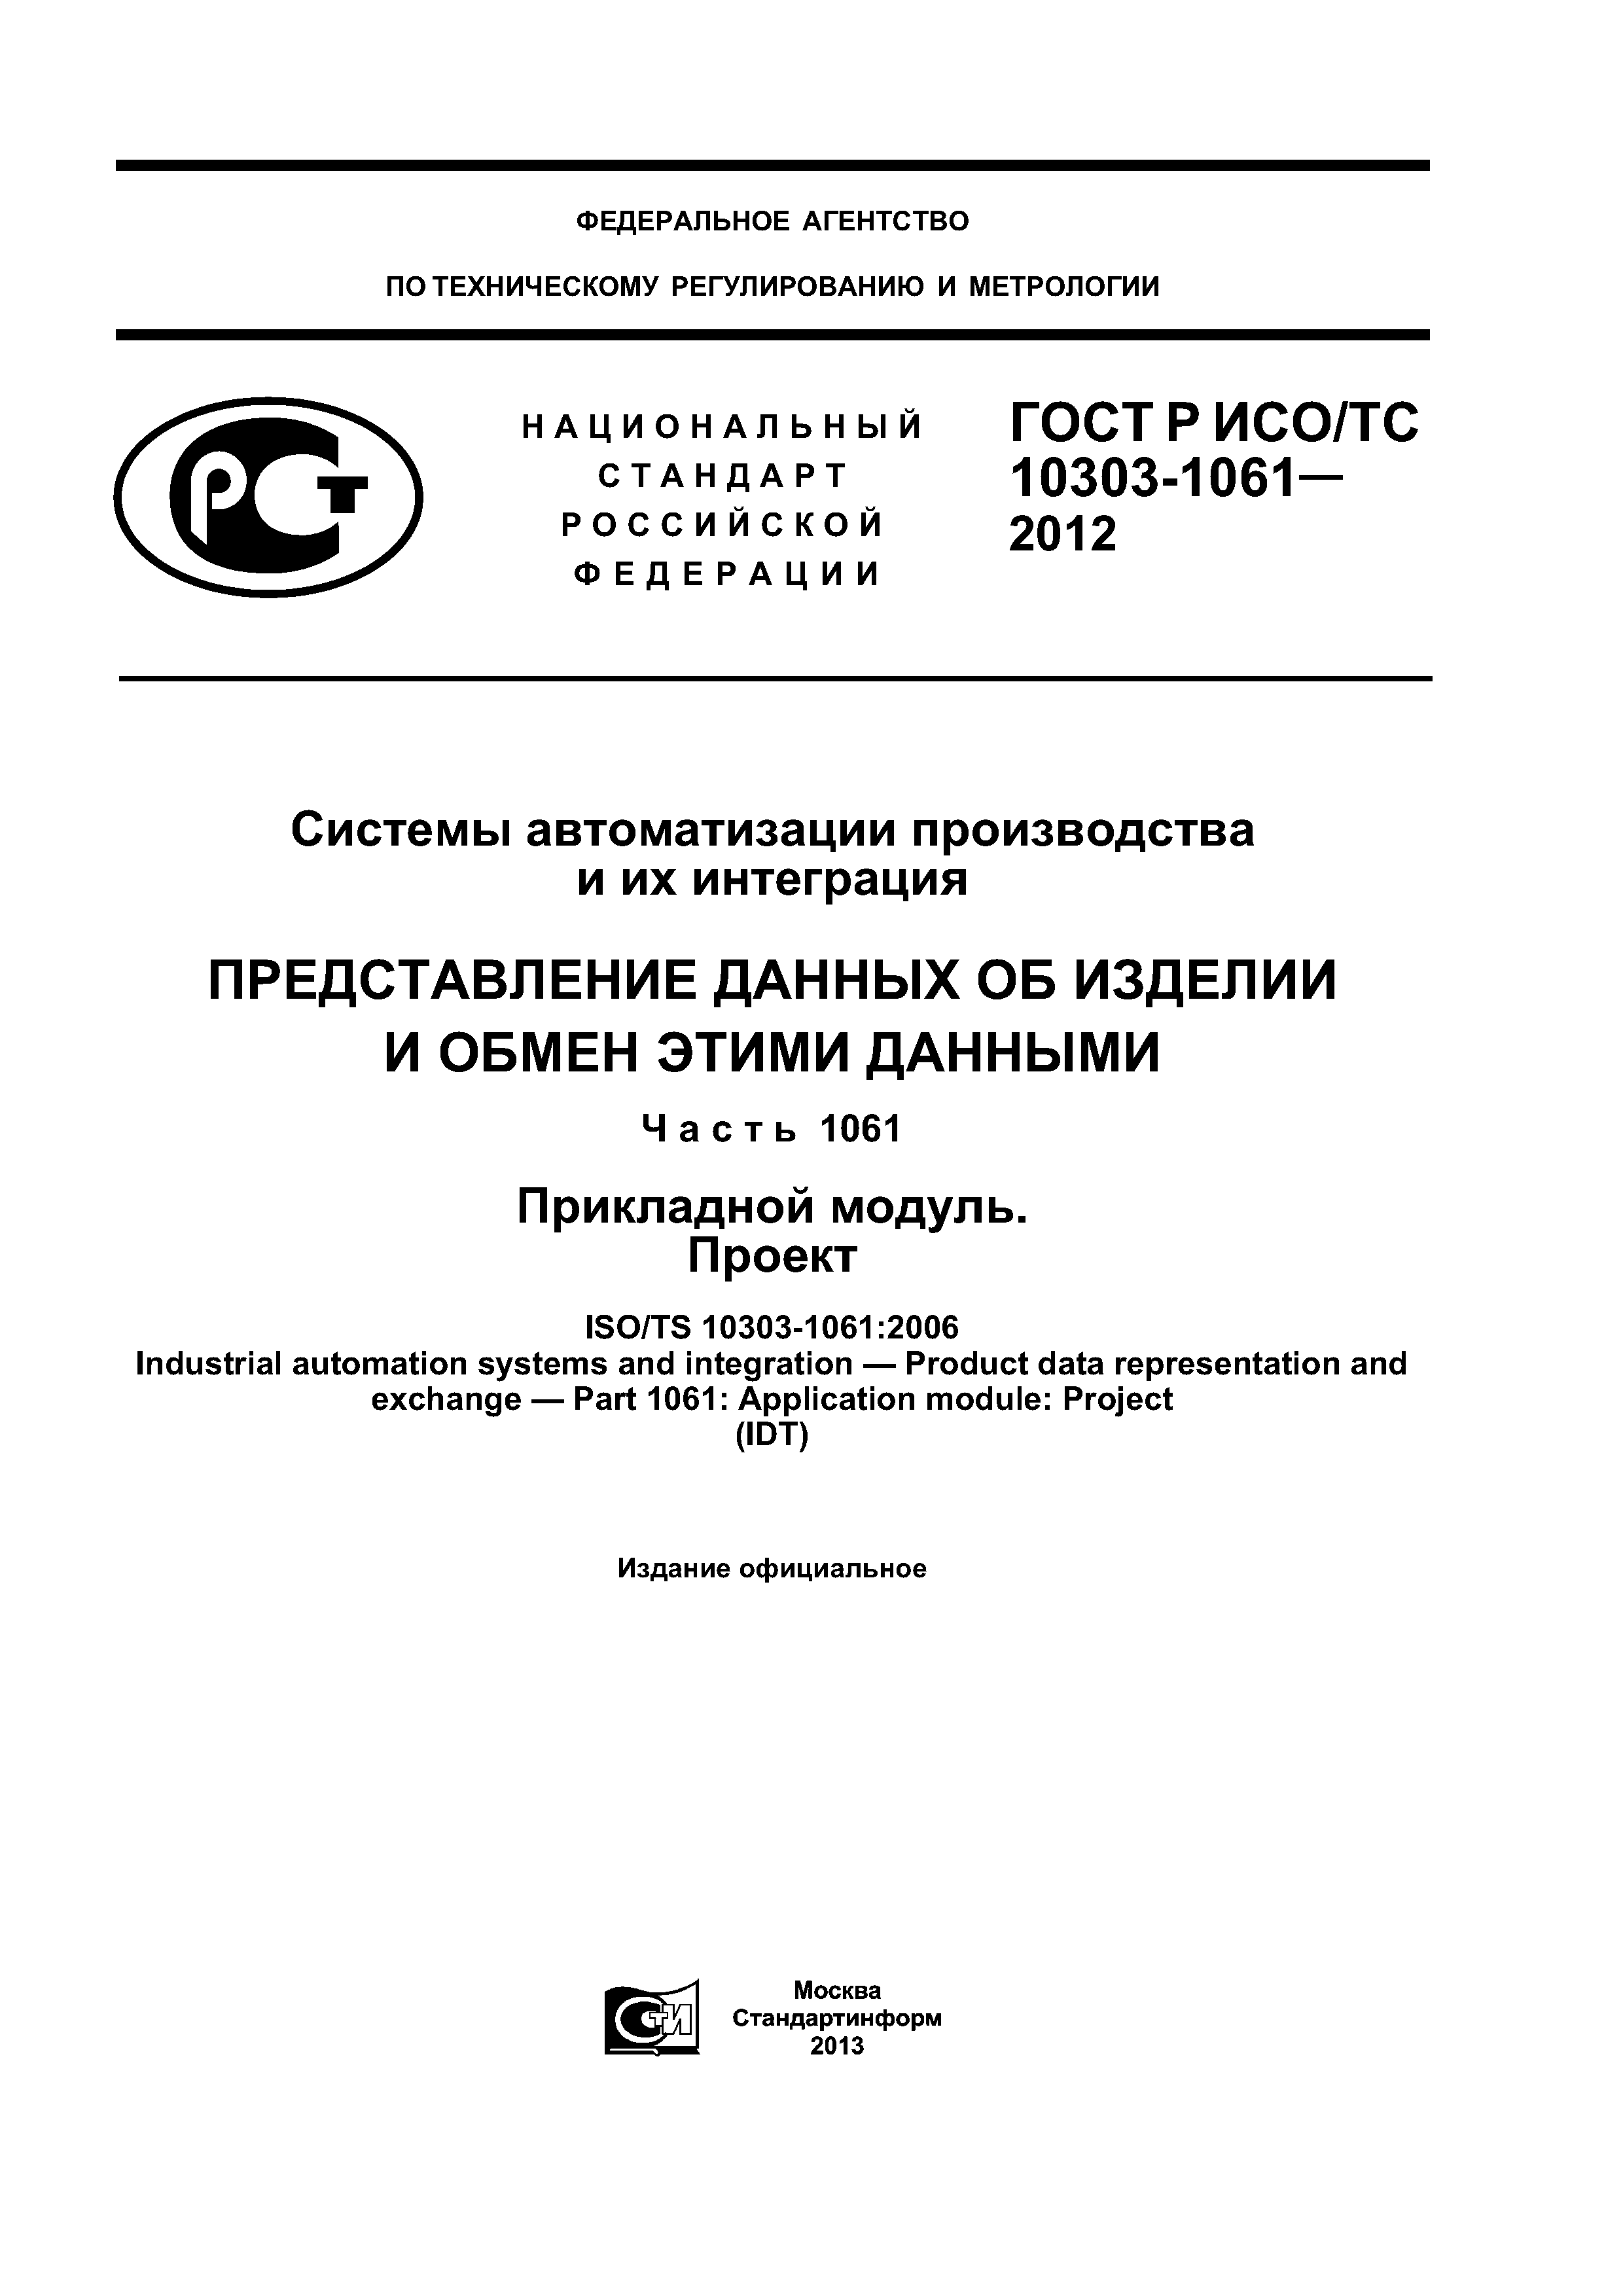 ГОСТ Р ИСО/ТС 10303-1061-2012